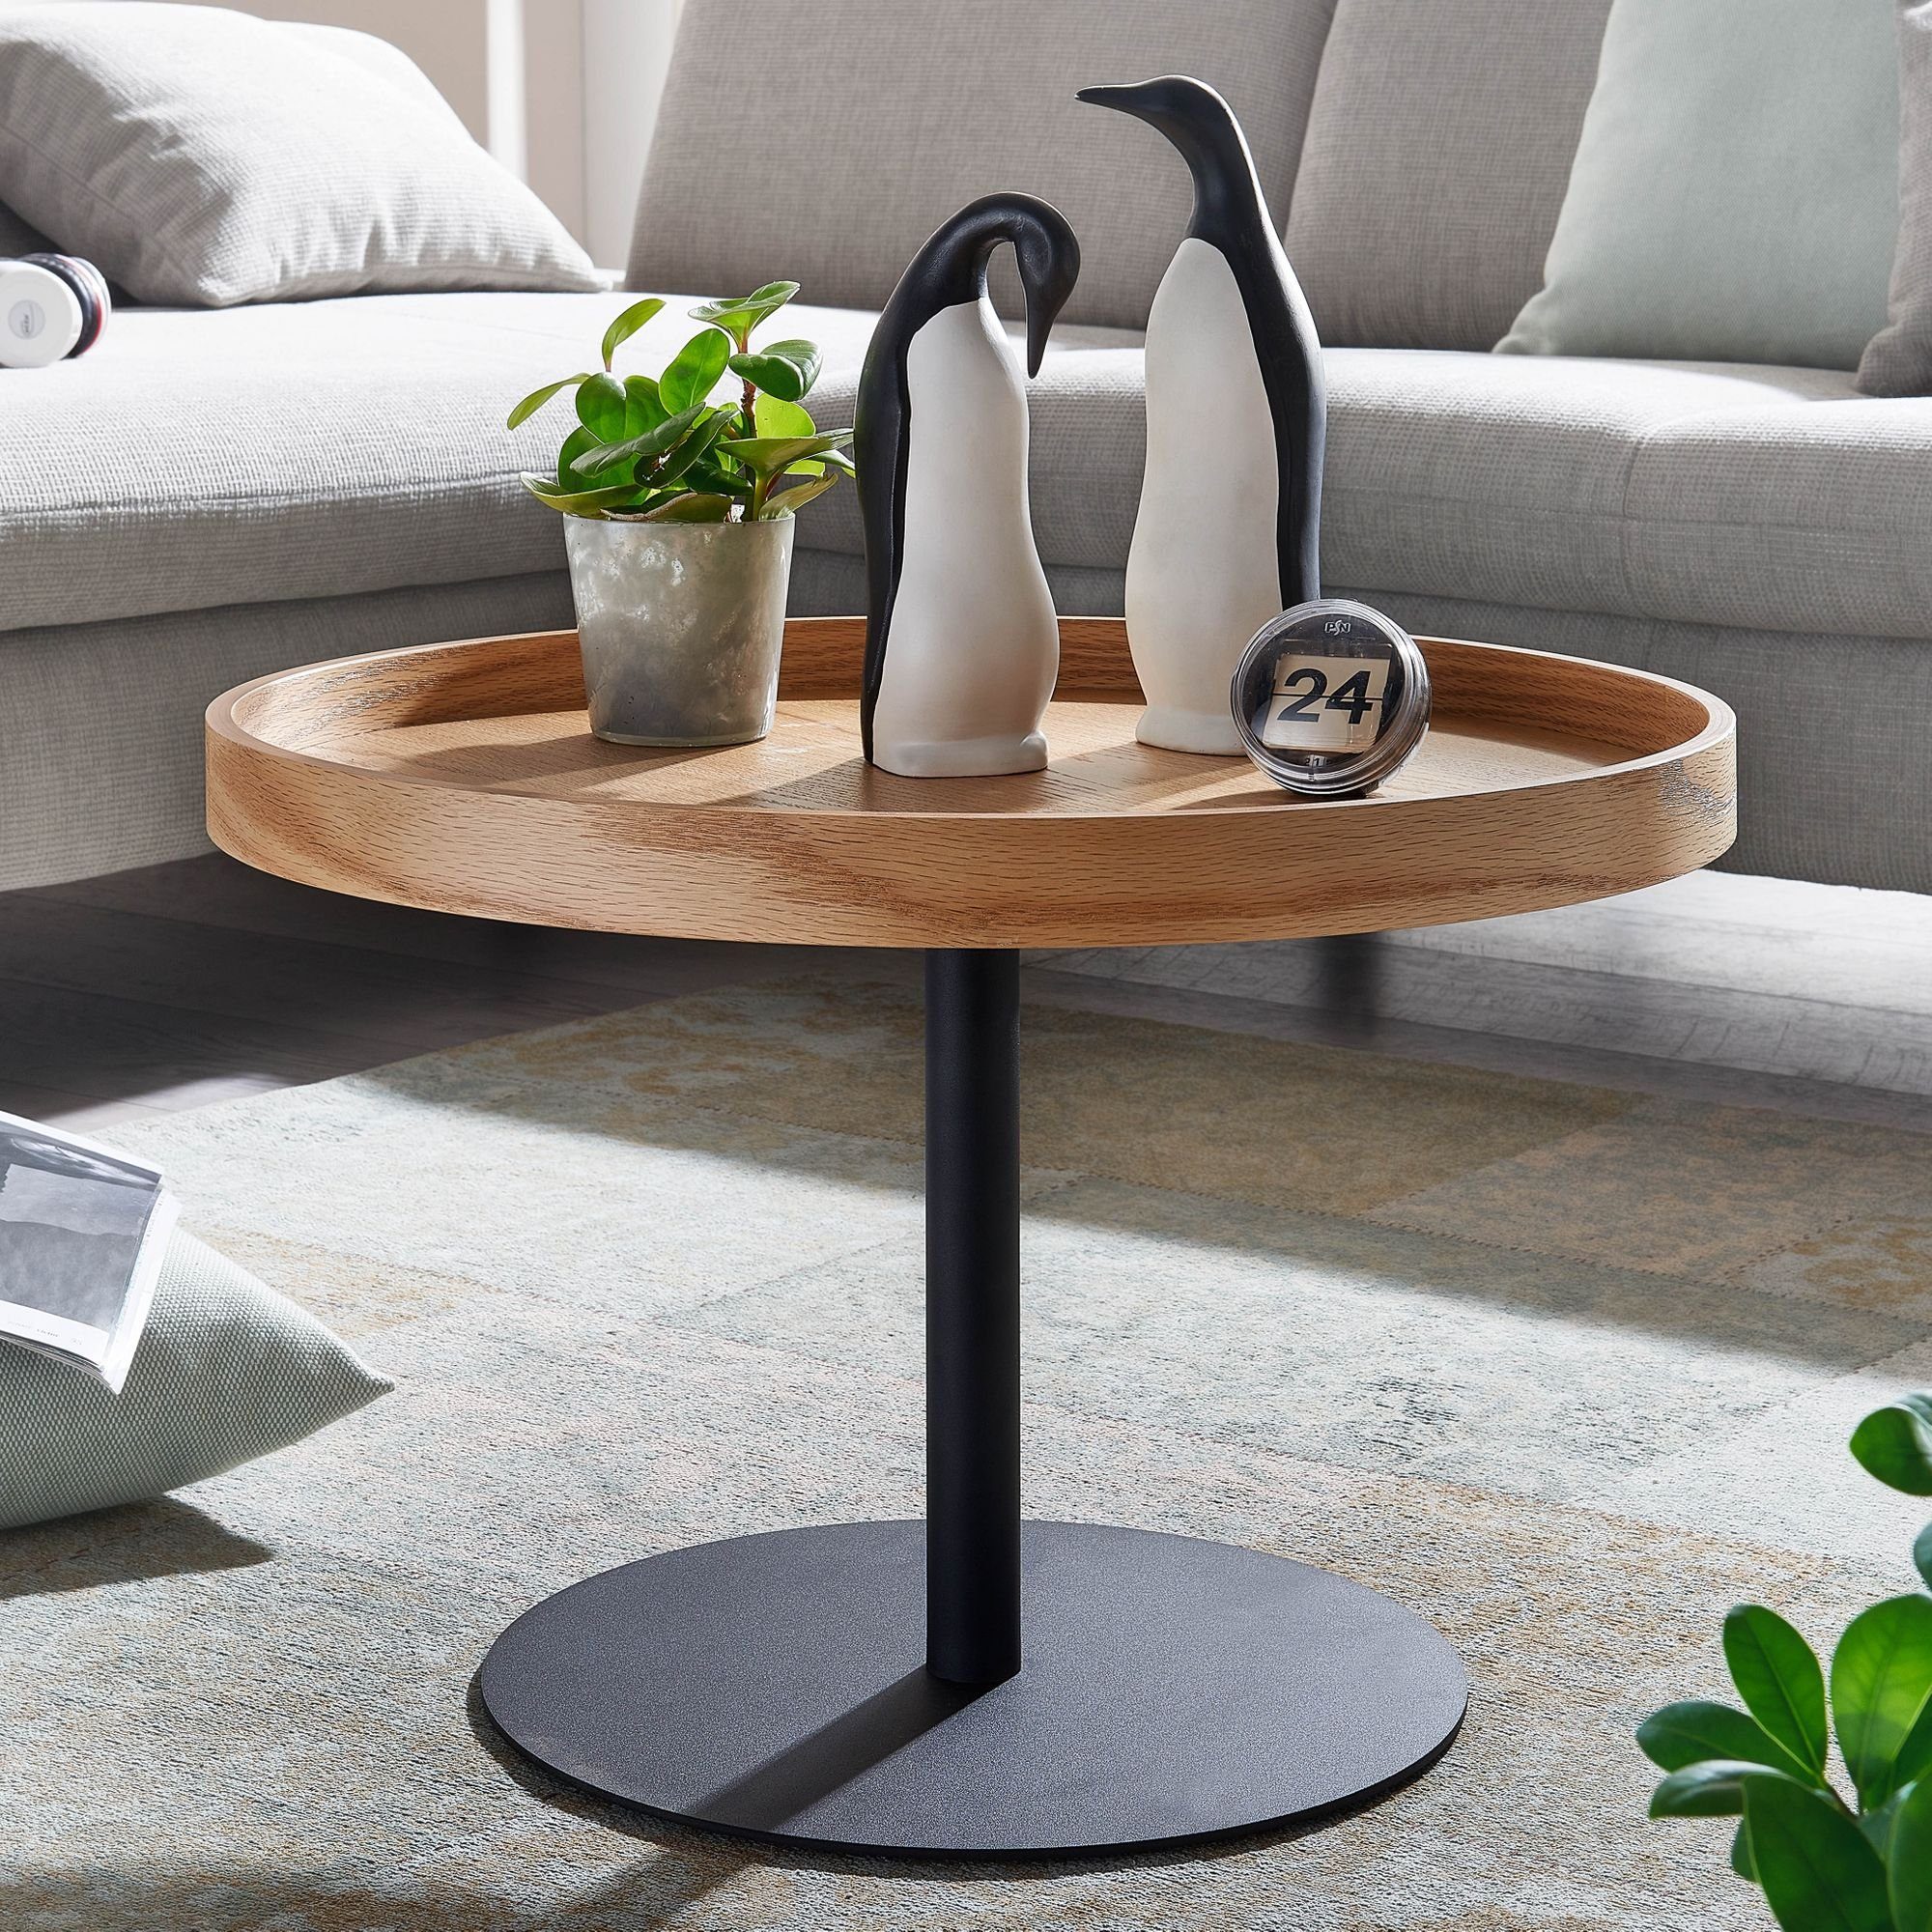 FINEBUY Eiche), Design FB74011 cm Tisch Rund, / Modern (61x61x40 Couchtisch Holz Kaffeetisch Sofatisch Wohnzimmertisch Metall,